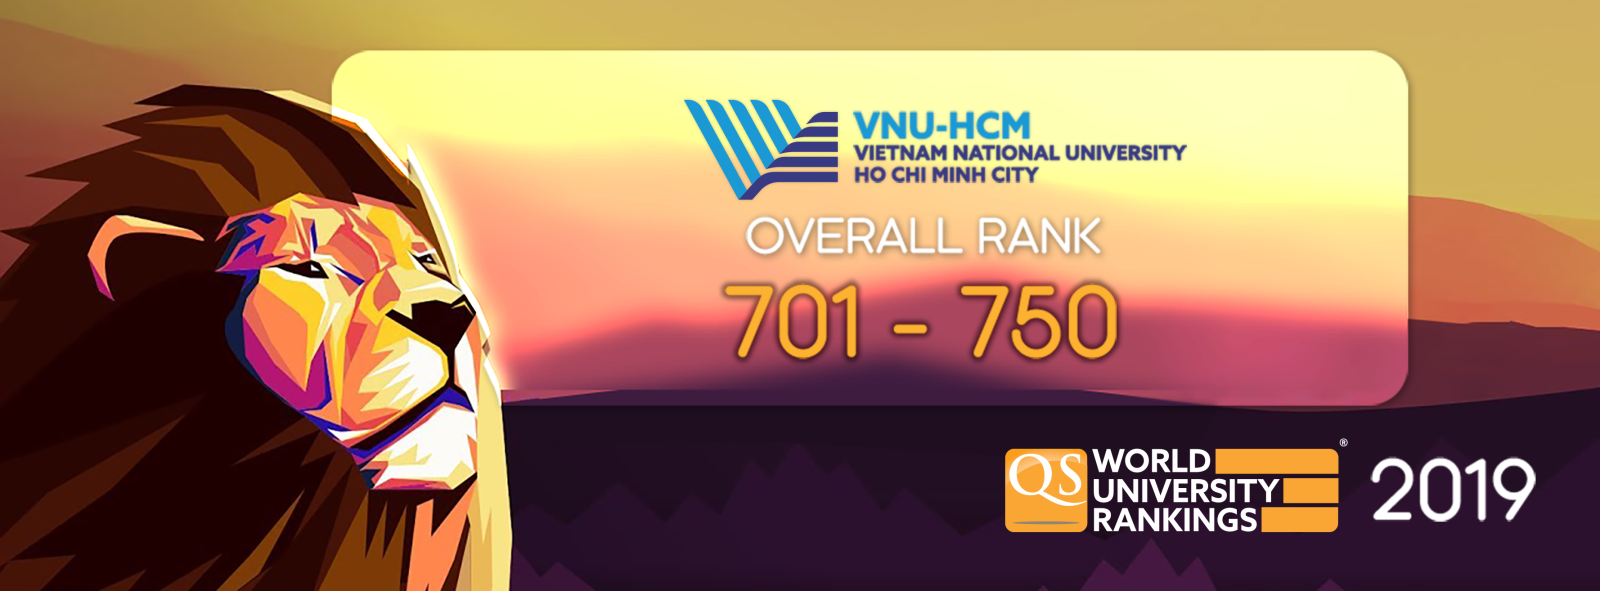 ĐHQG-HCM đứng top 701-750 trong Bảng xếp hạng QS World